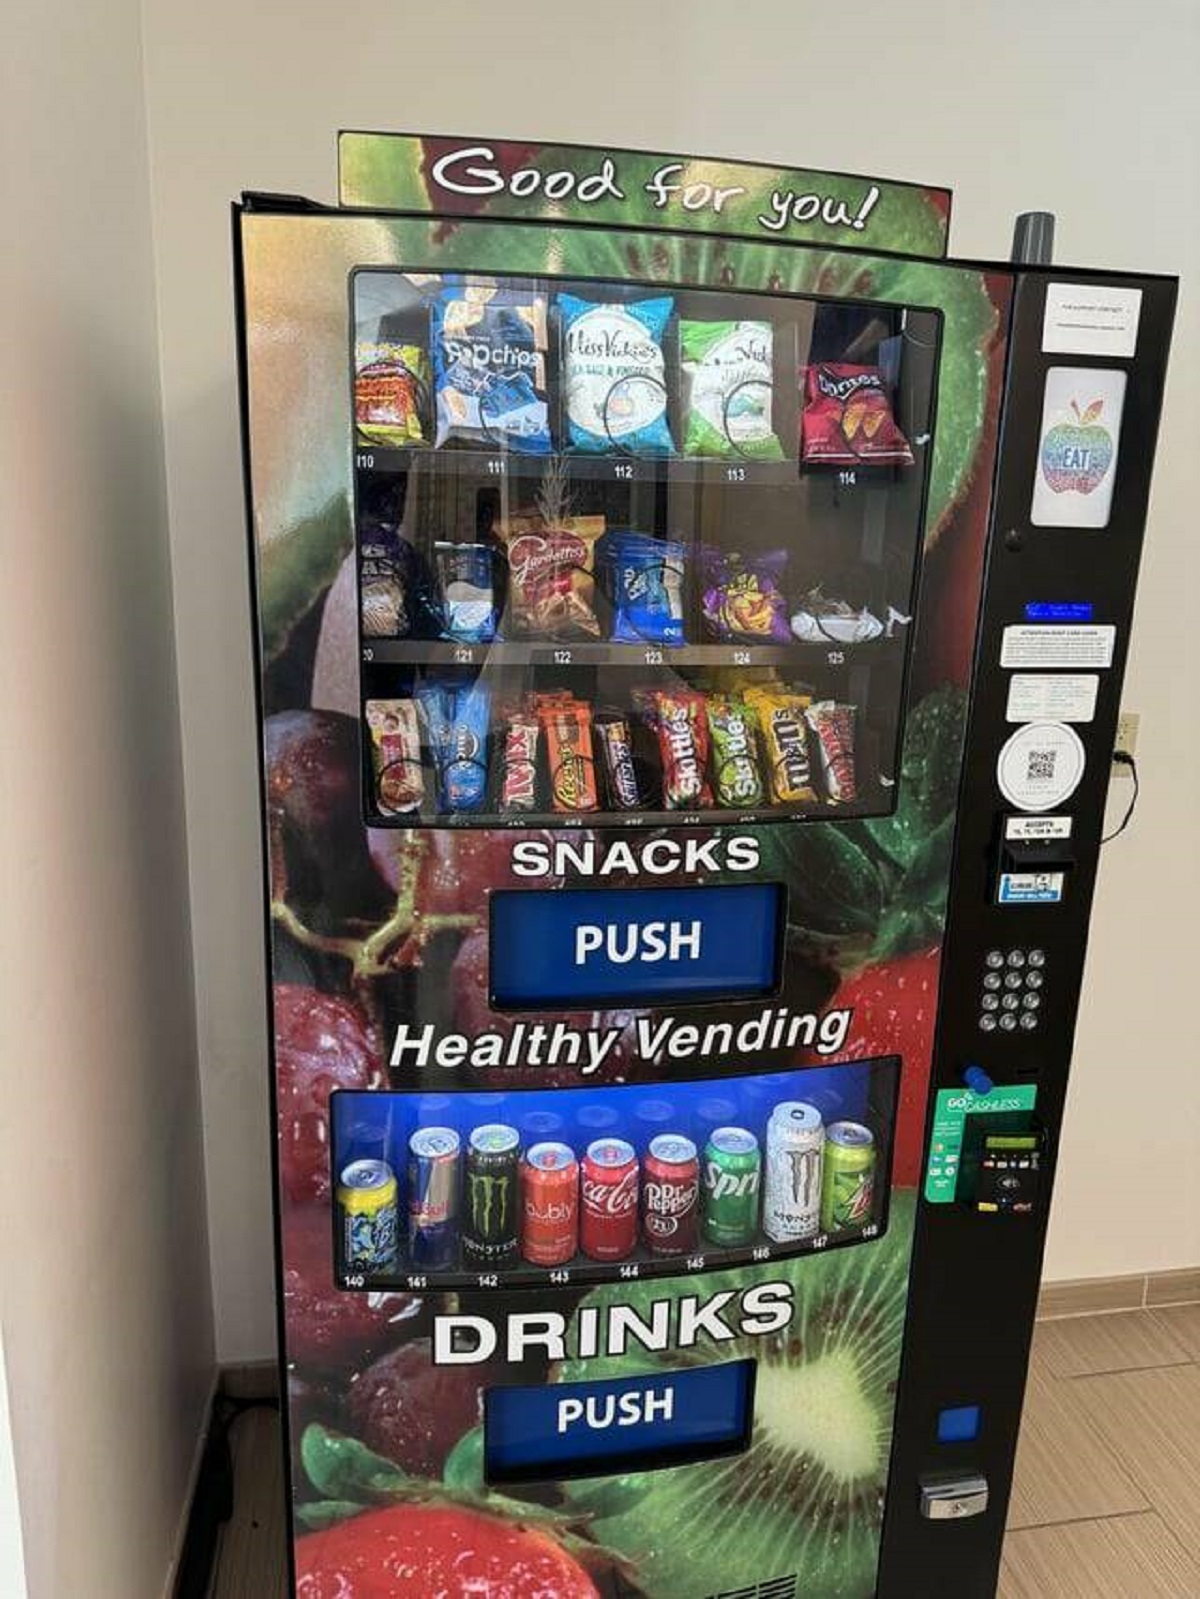 "A healthy vending machine in America"